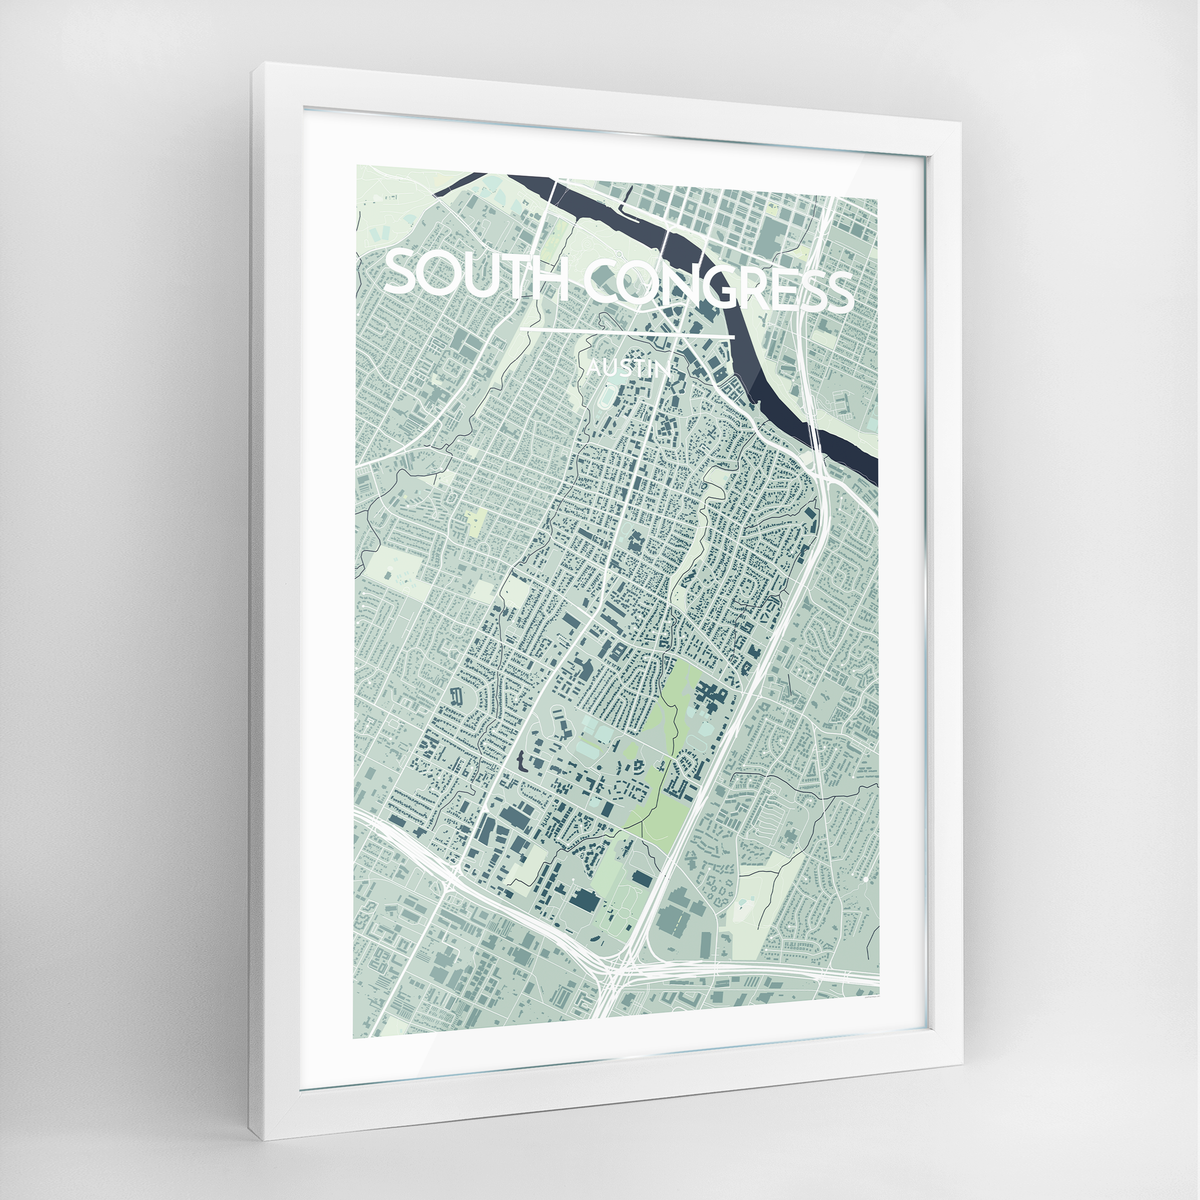 South Congress Neighbourhood of Austin Map Art Print - Framed